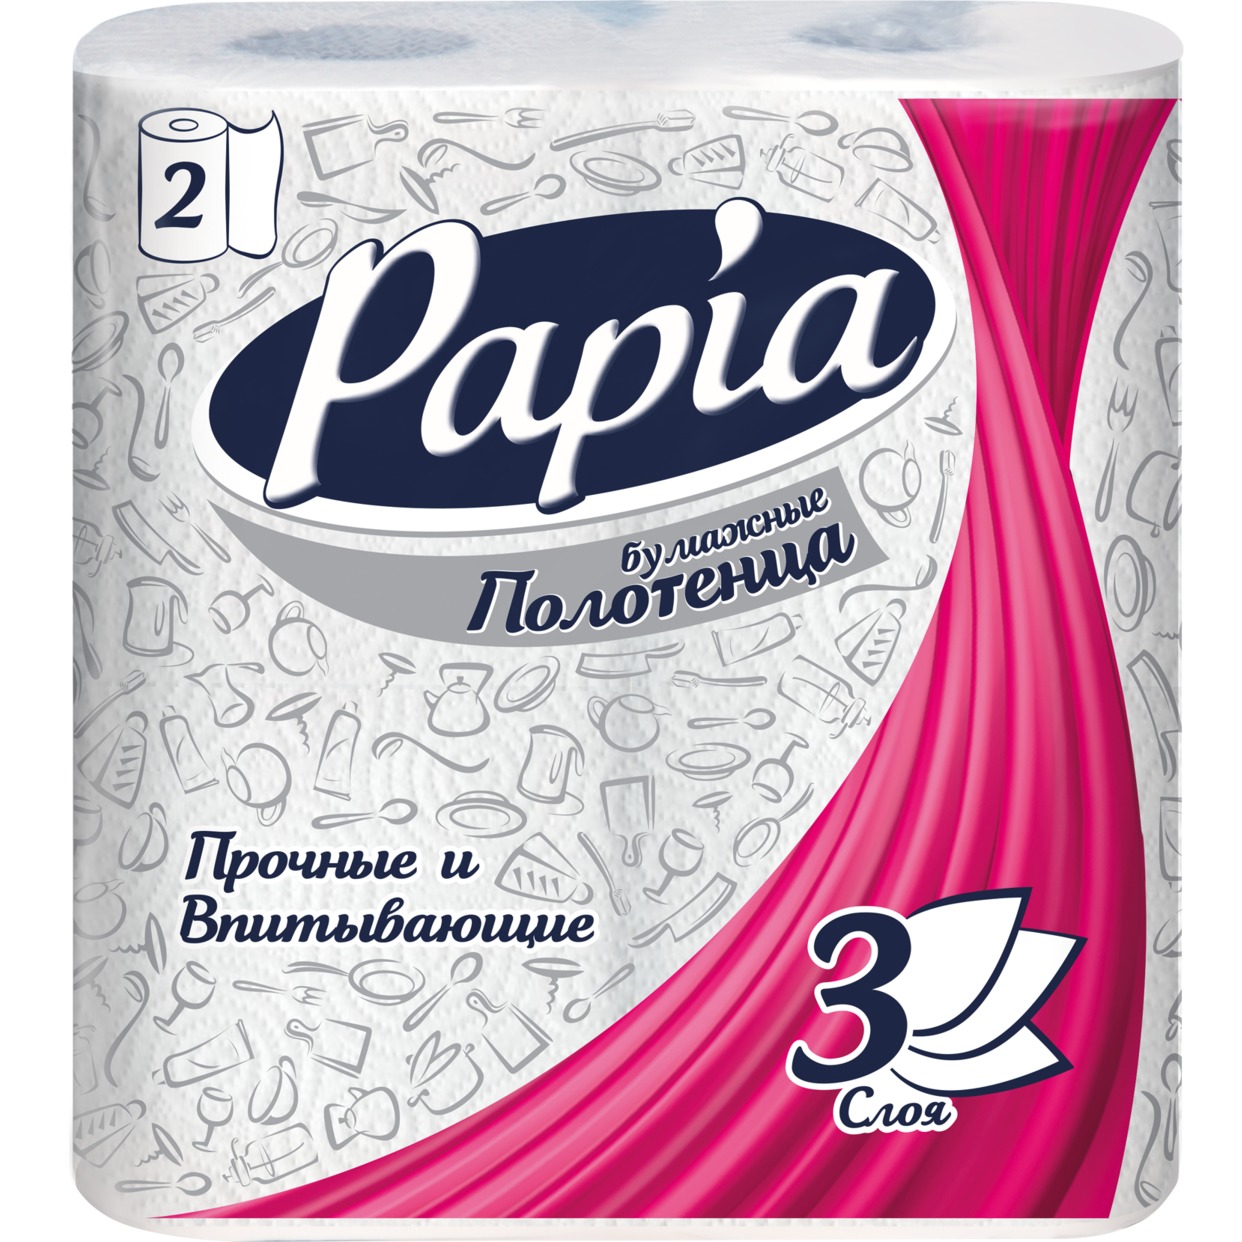 Бумажные полотенца Papia 3 слоя 2шт по акции в Пятерочке